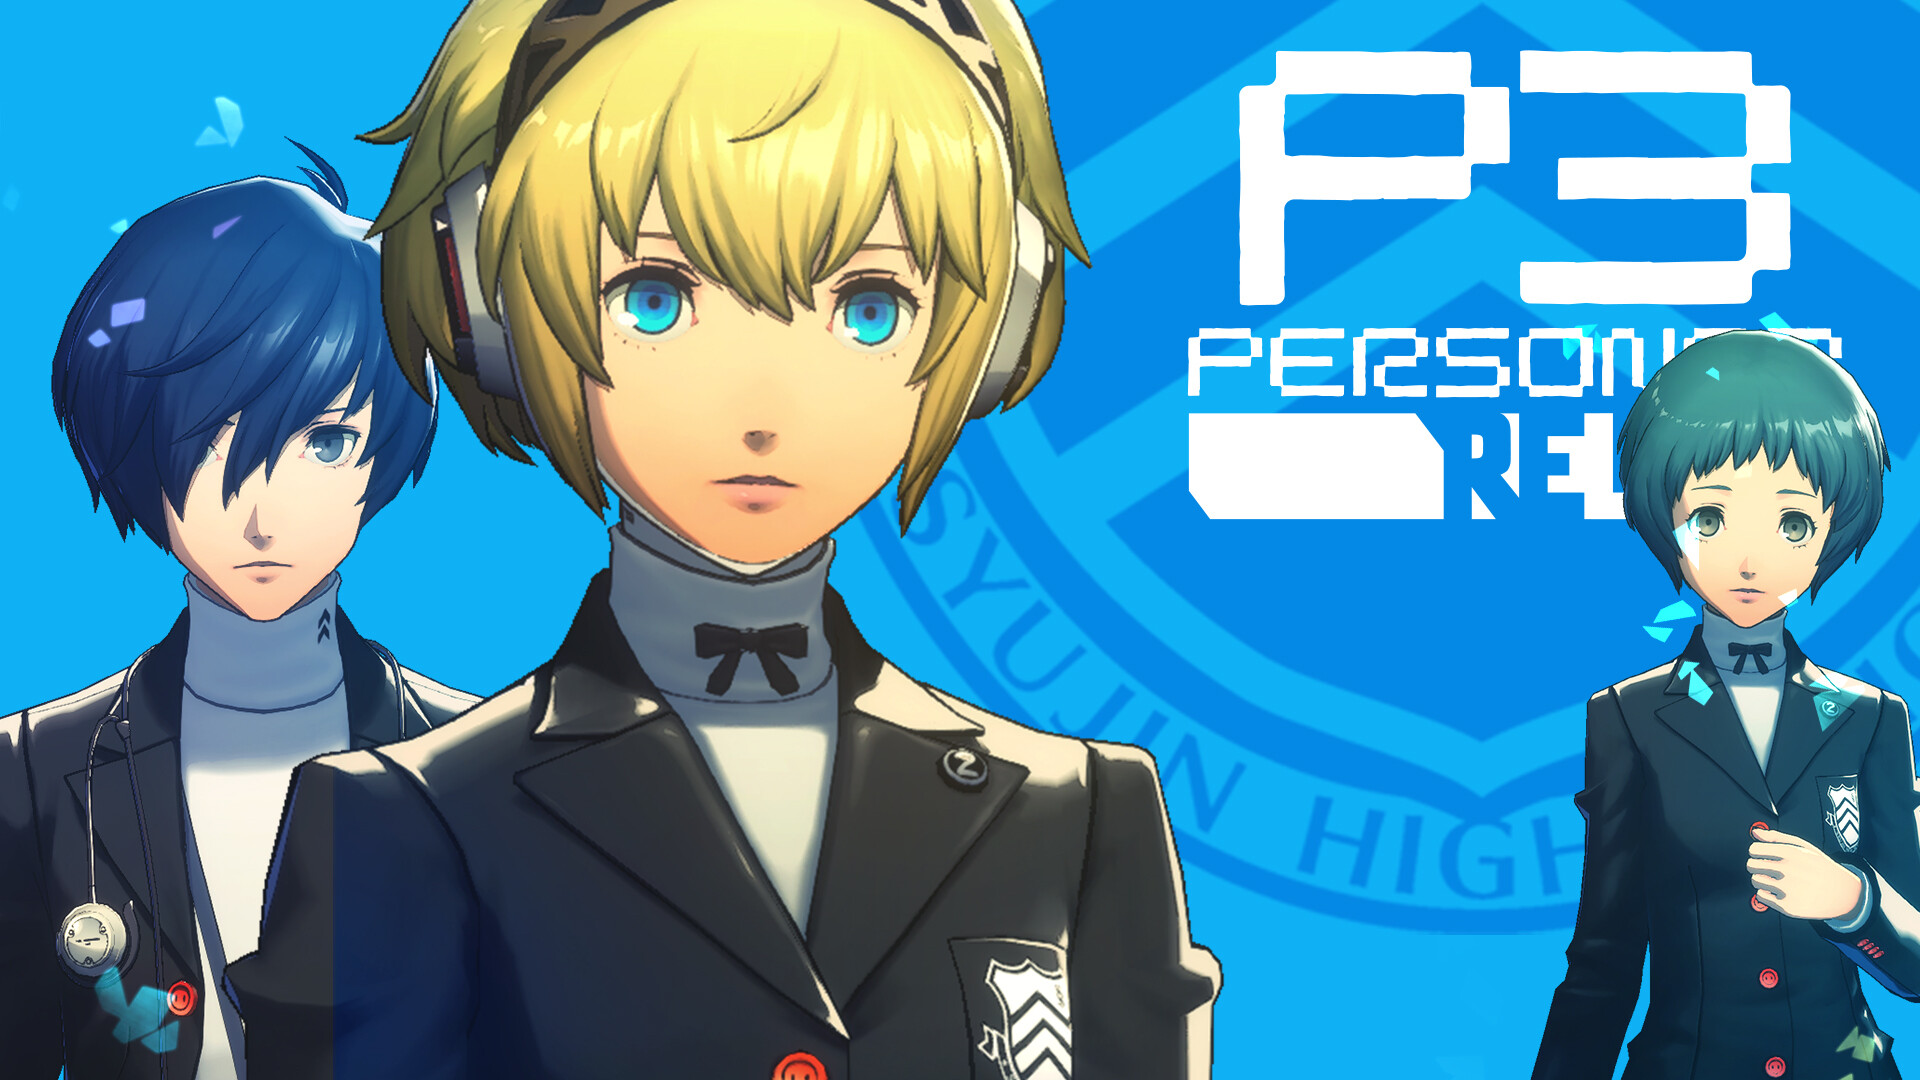 Persona 3 reload социальные. Persona 3 Reload. Persona 3 Reload - p5r: набор костюмов Академии Сюдзин. Ведущий партнёр персрна 3 релоад. Persona 3 Reload: набор костюмов призрачных похитителей из persona 5 Royal.